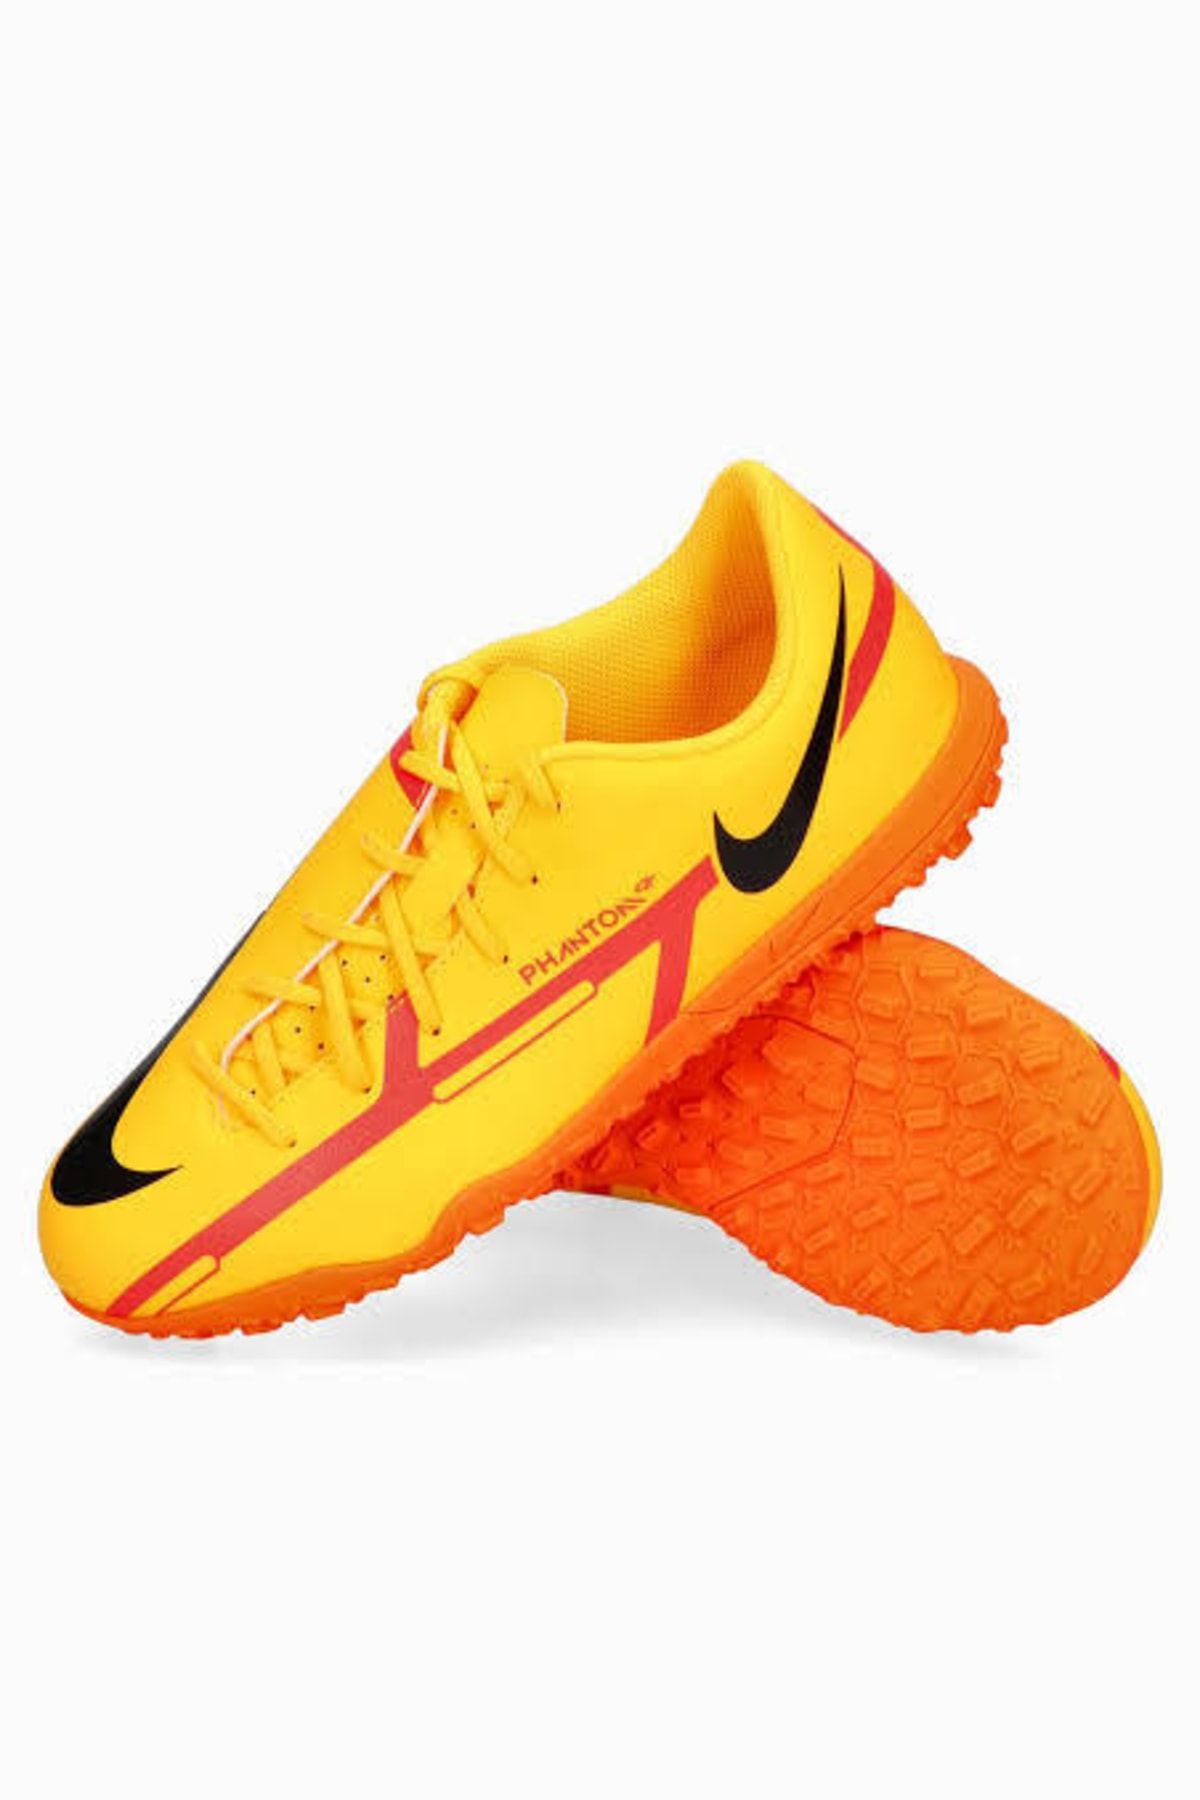 Nike -phantom Cocuk-turuncu-hali-saha-ayakkabisi-dc0827-808